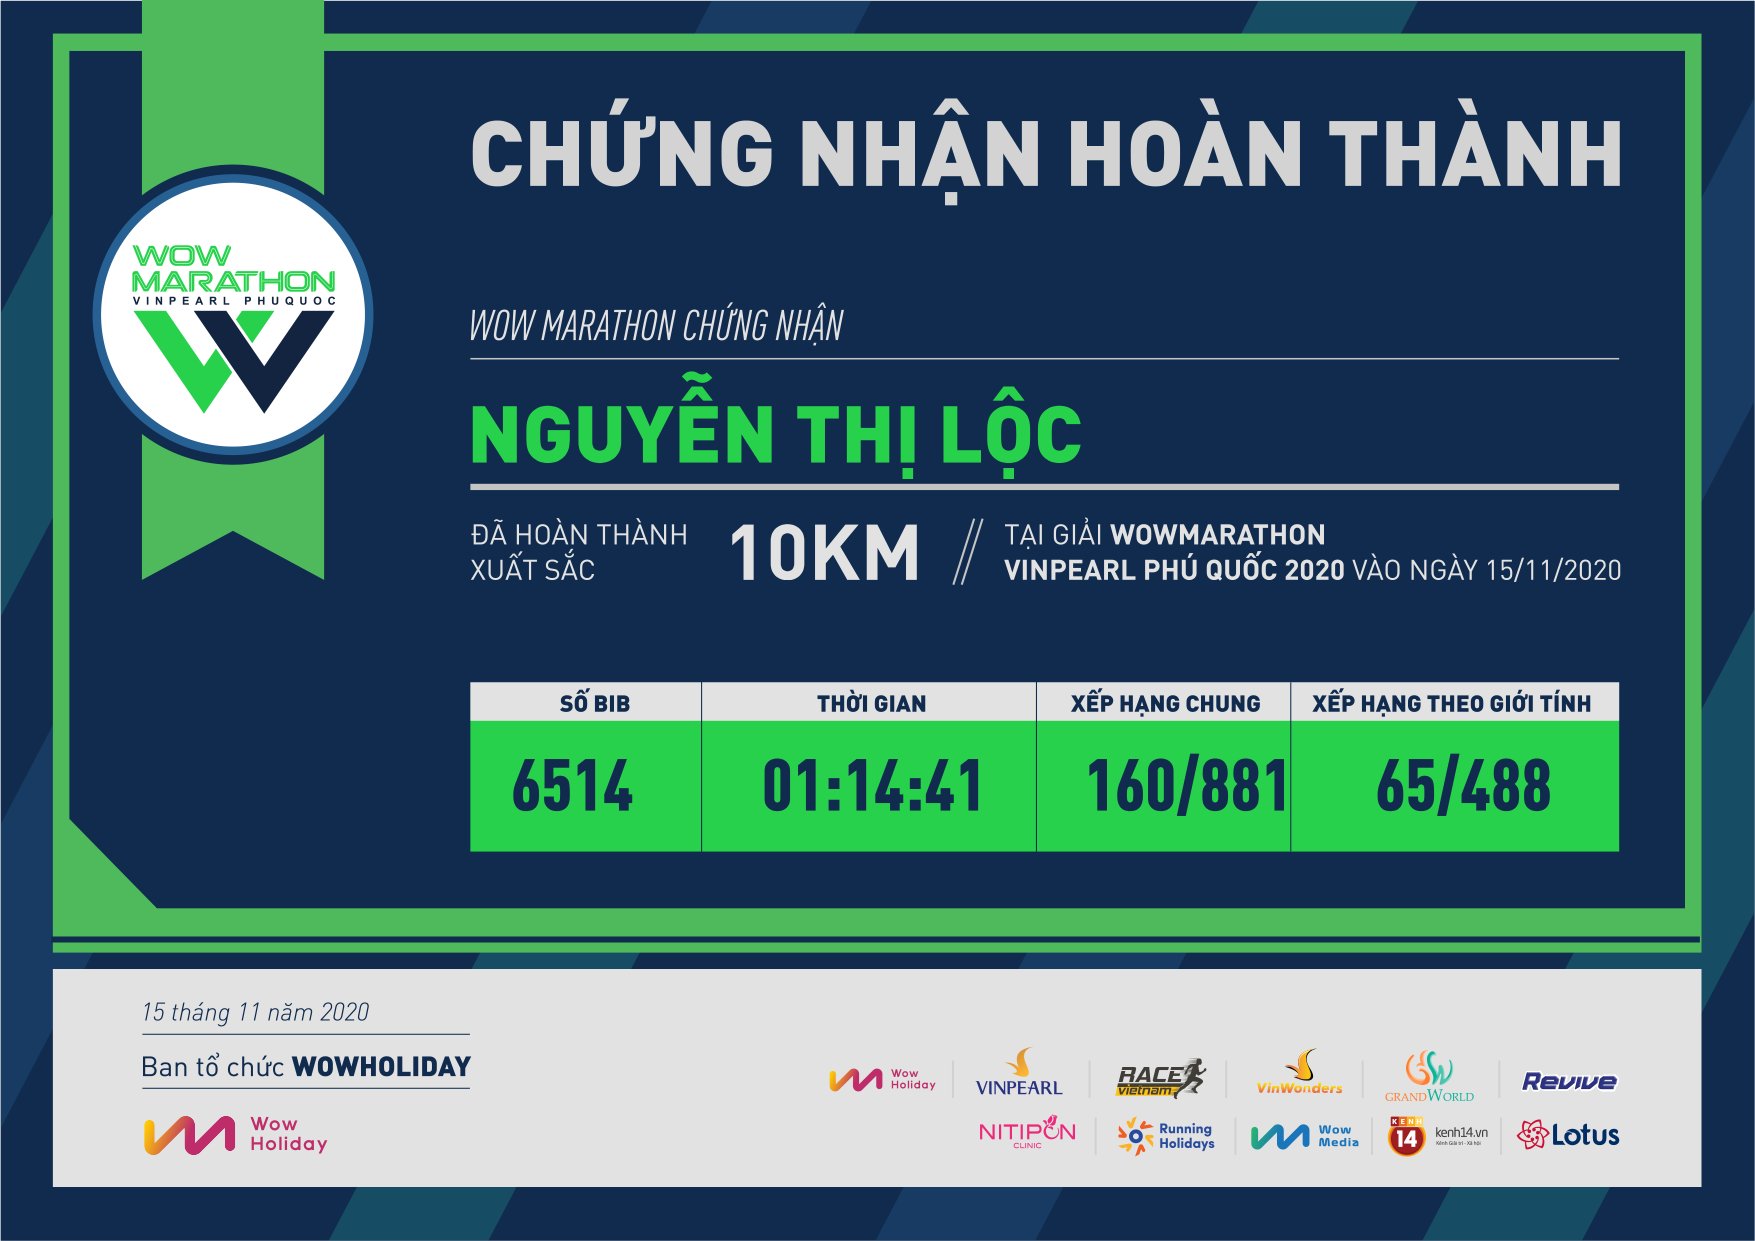 6514 - Nguyễn Thị Lộc